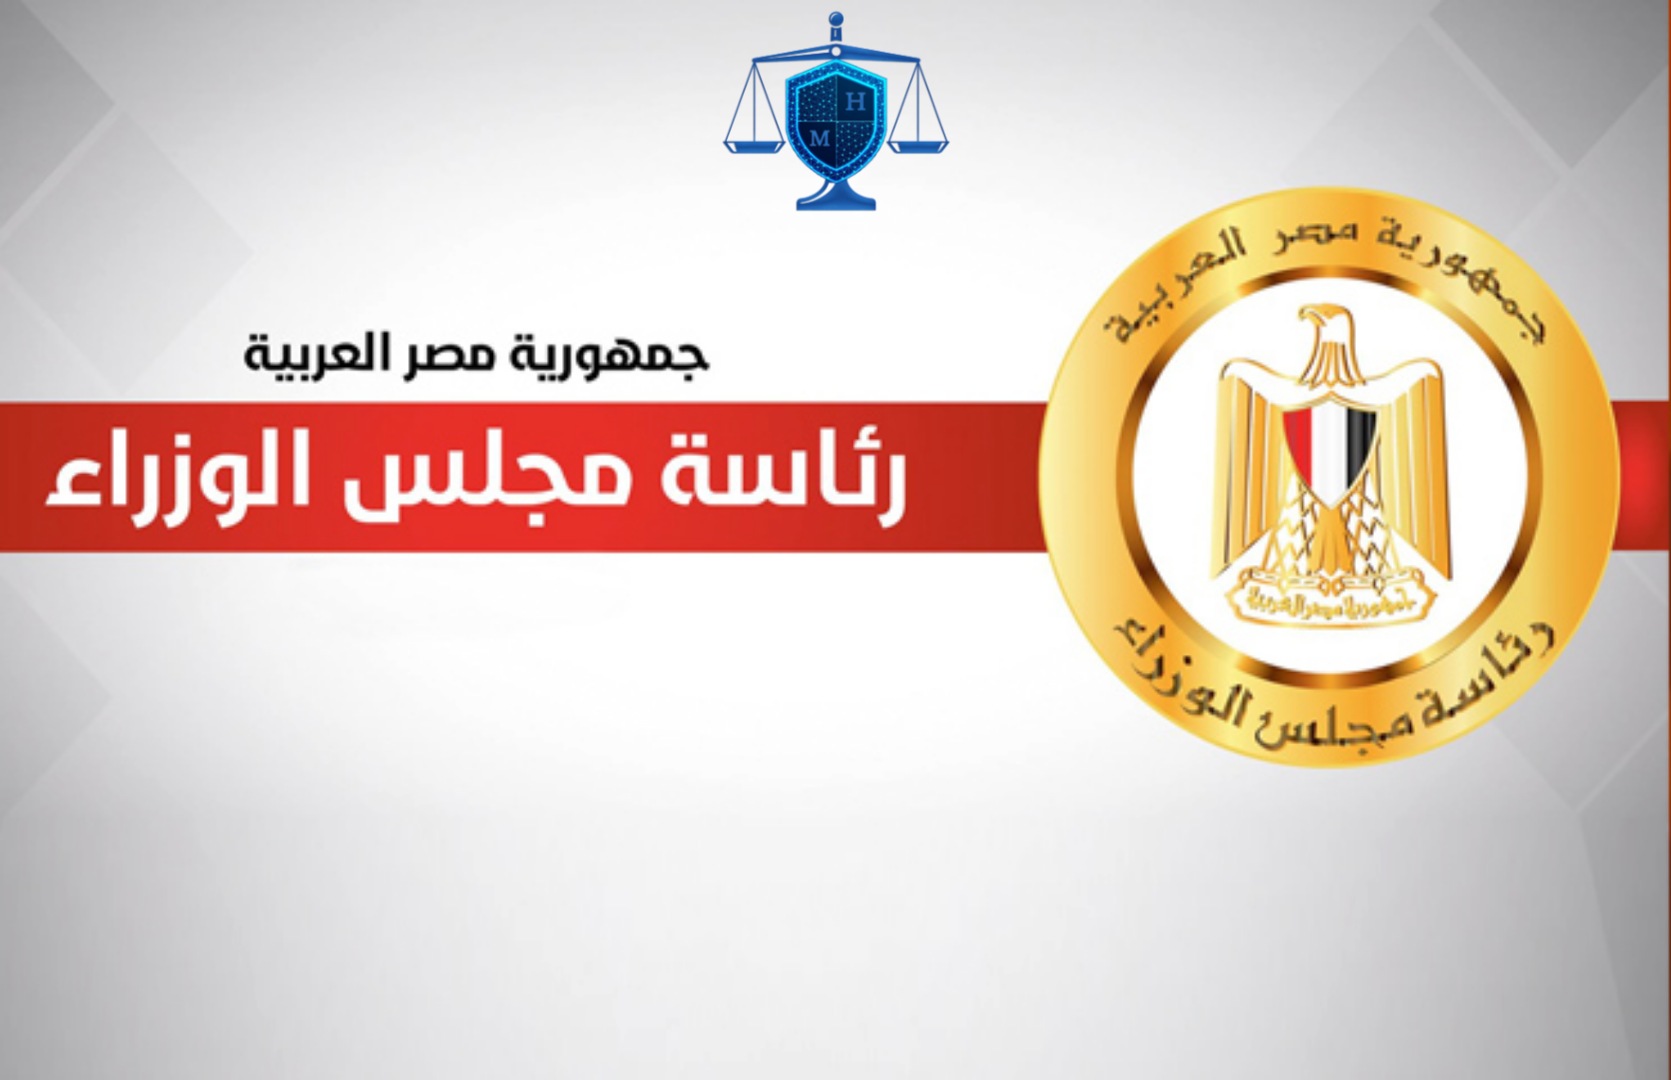 عناوين وتليفونات الوزارات المصرية